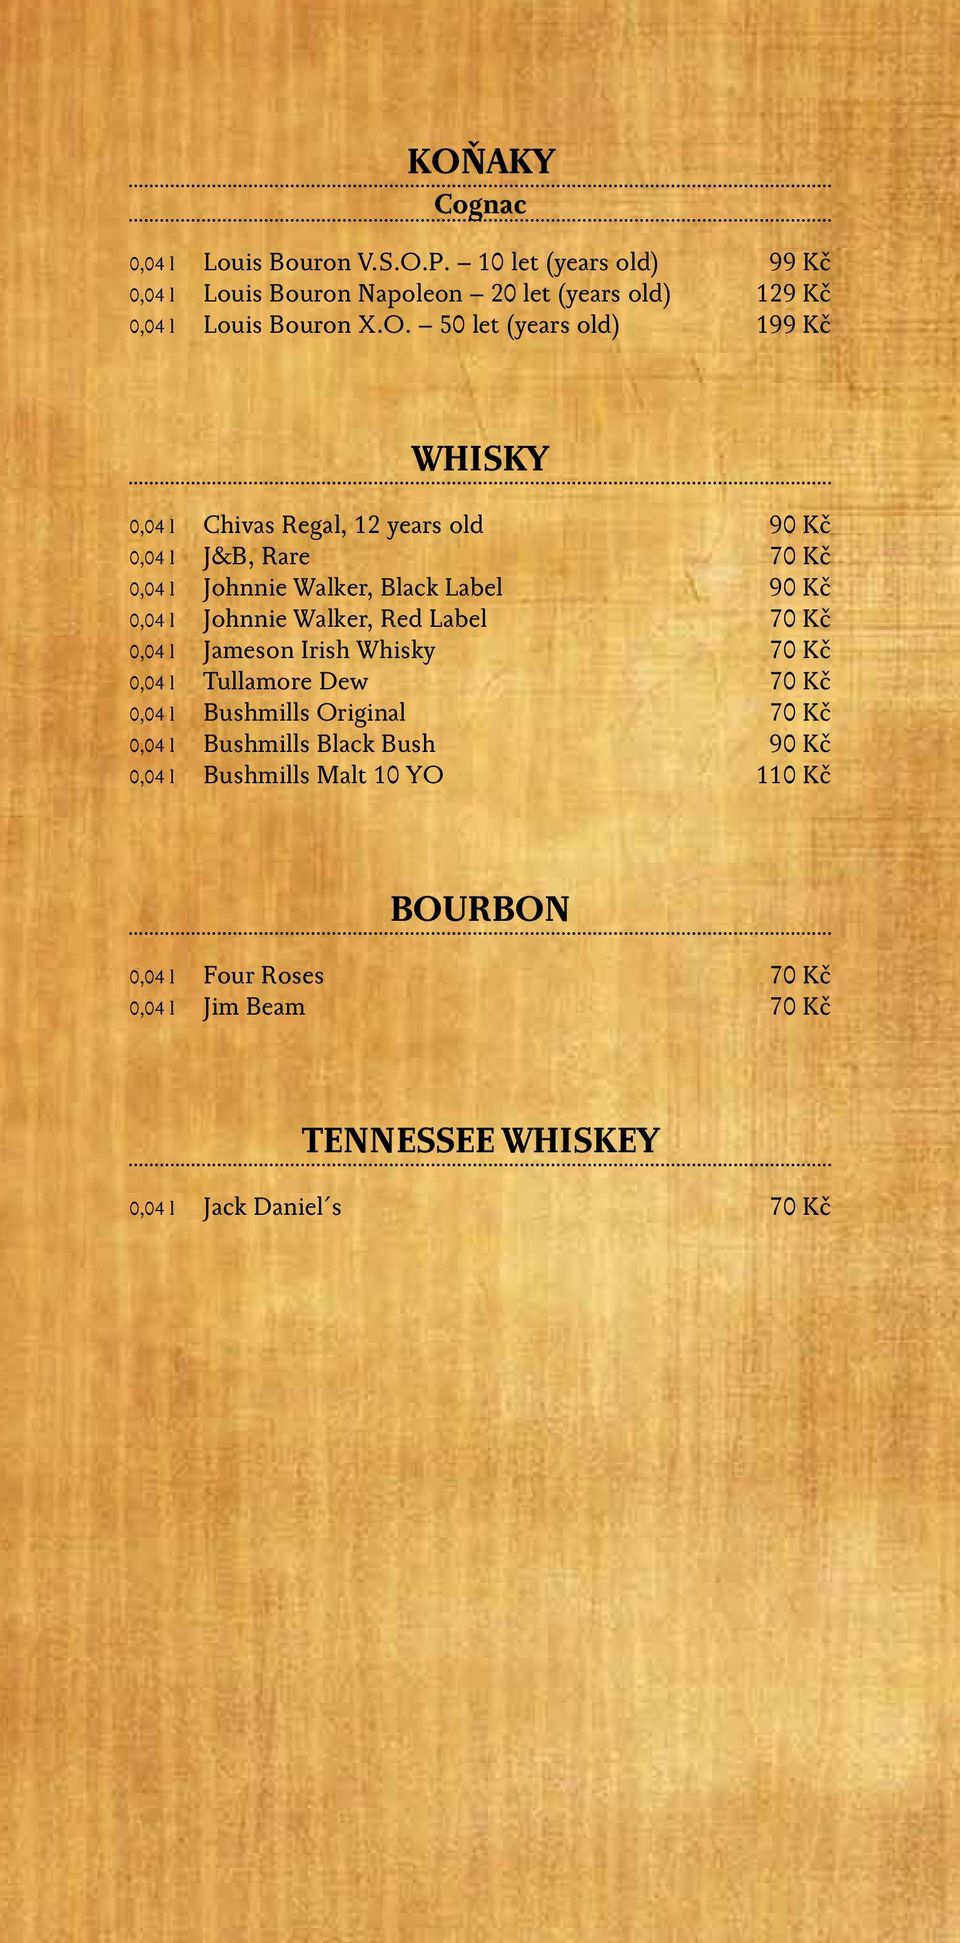 l Johnnie Walker, Red Label 70 Kč 0,04 l Jameson Irish Whisky 70 Kč 0,04 l Tullamore Dew 70 Kč 0,04 l Bushmills Original 70 Kč 0,04 l Bushmills